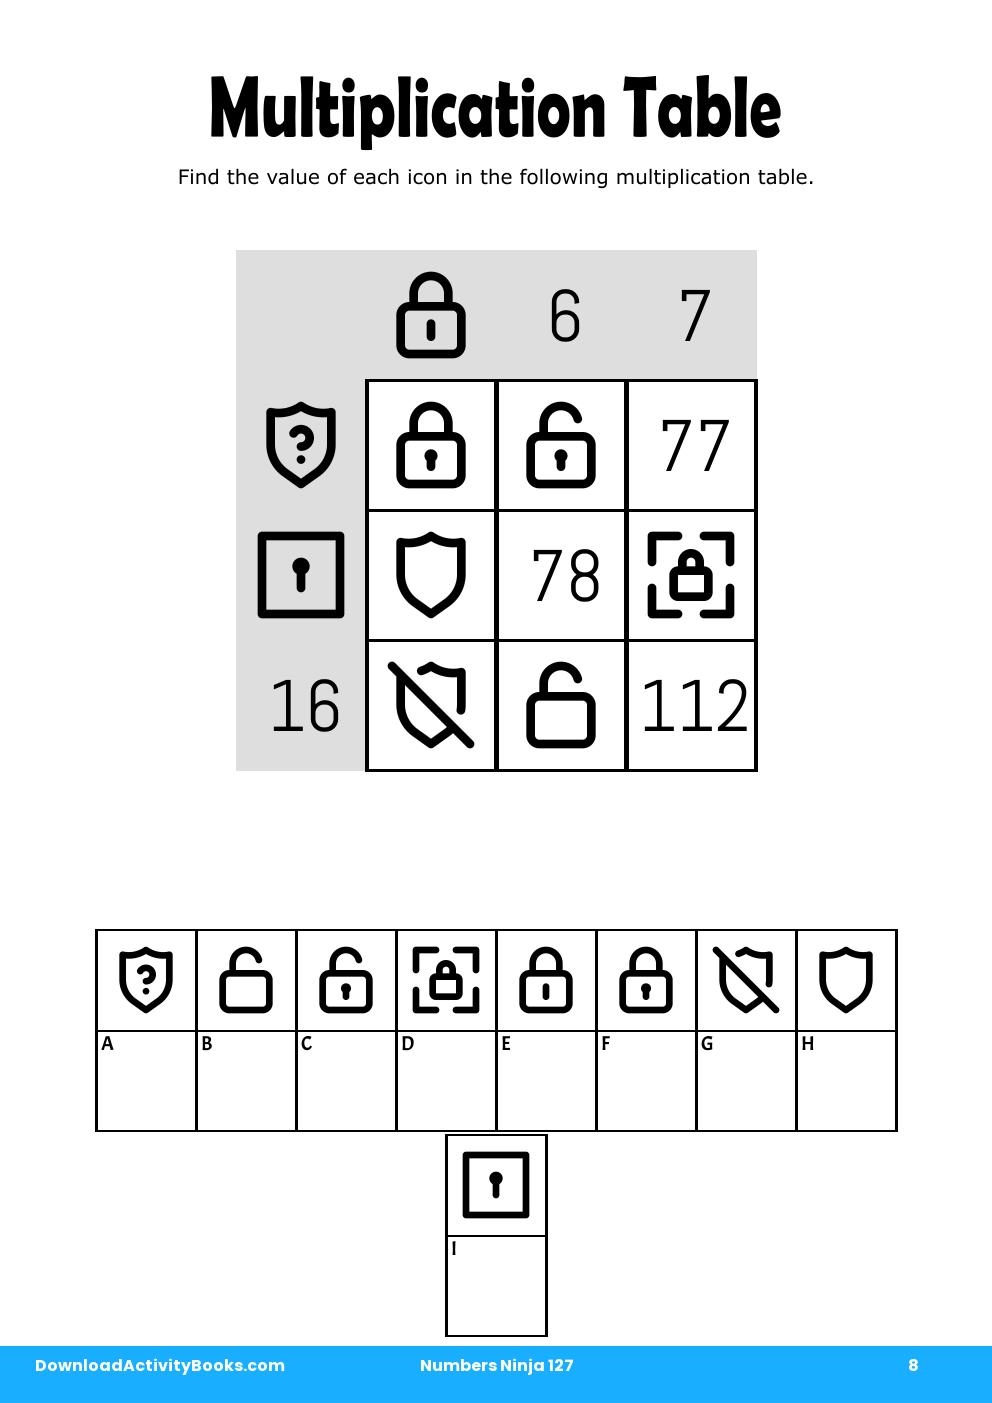 Multiplication Table in Numbers Ninja 127